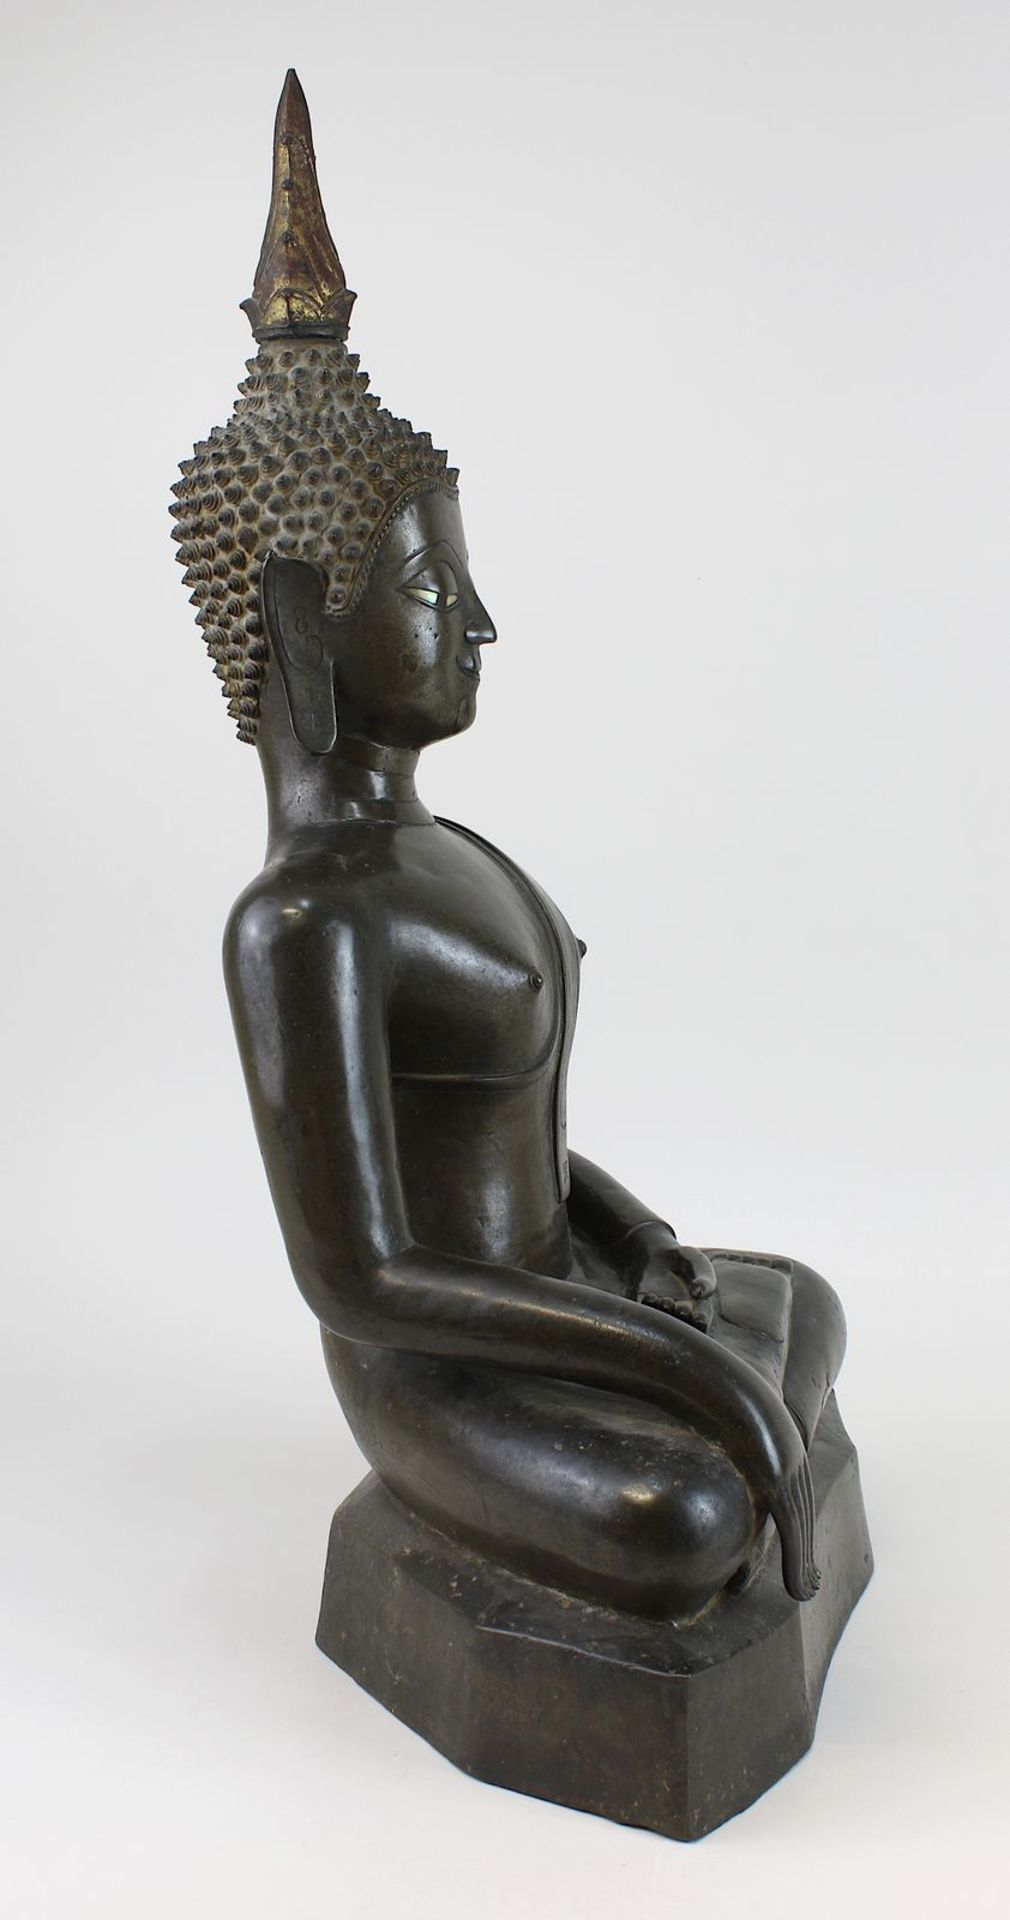 Großer Bronze-Buddha, Siam wohl um 1800, Buddha in Meditationshaltung auf glattem mehreckigem Sockel - Bild 2 aus 6